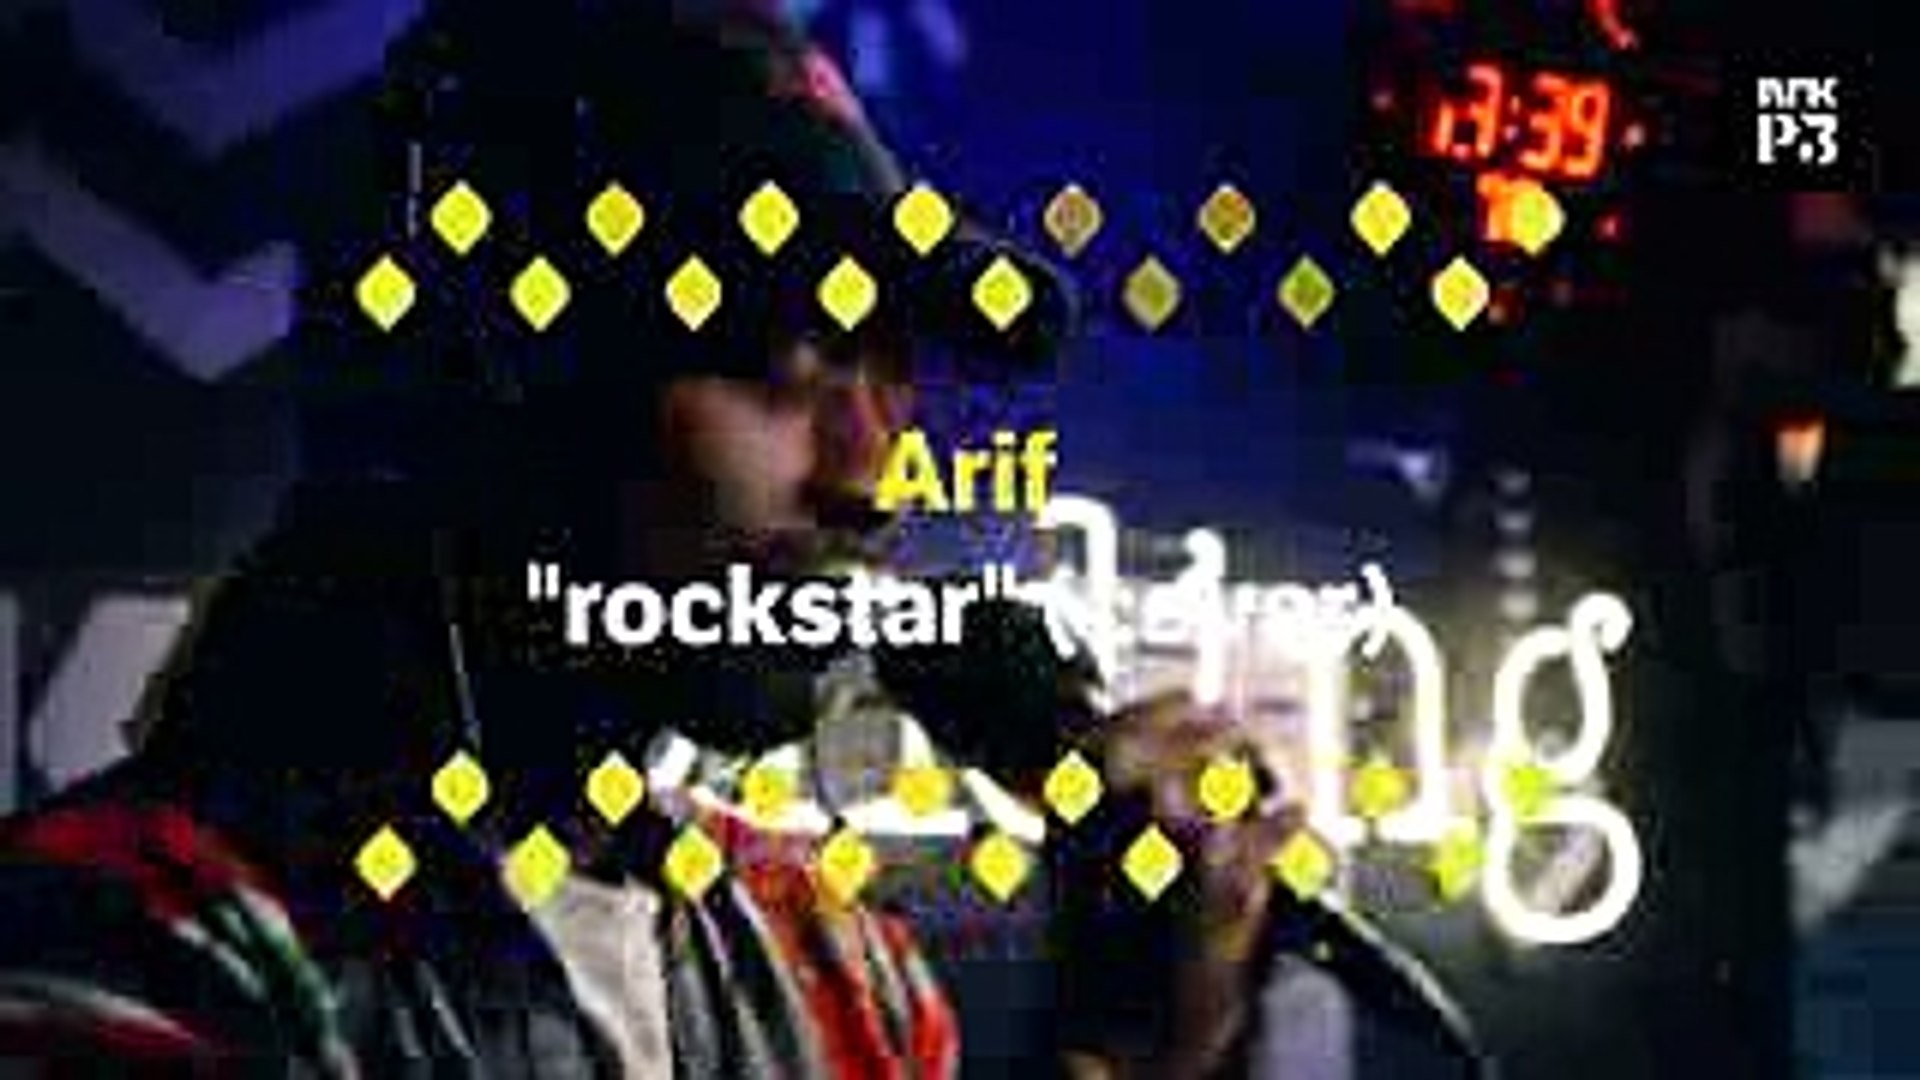 ⁣P3 Live Arif rockstar (Post Malone cover)